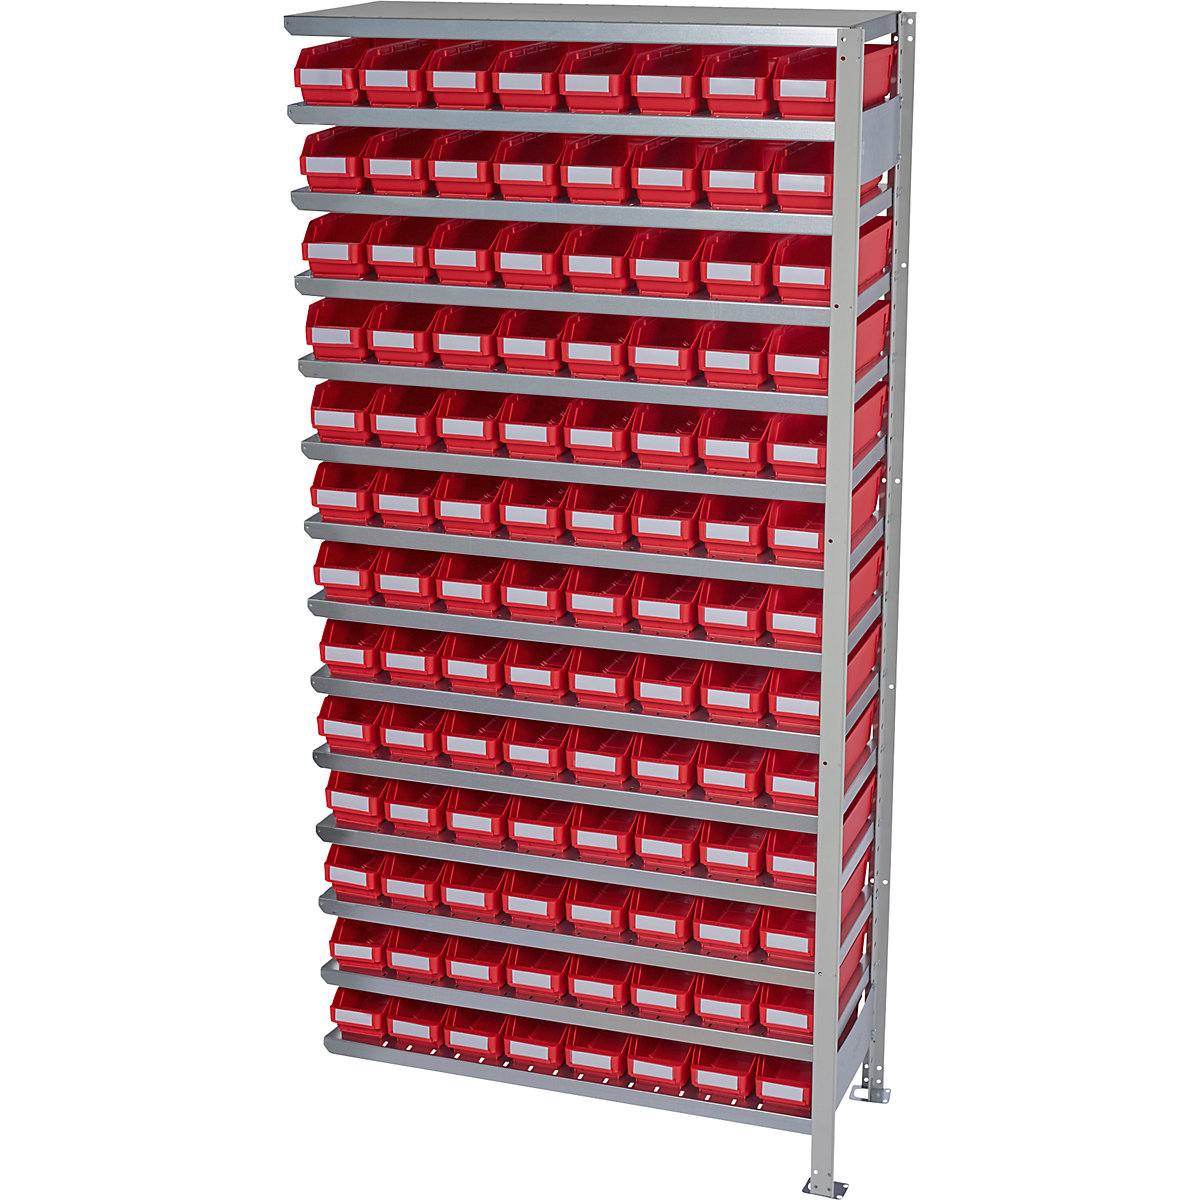 Összedugaszolós állvány dobozokkal – STEMO, állványmagasság 2100 mm, bővítő állvány, 400 mm mély, 104 piros doboz-12